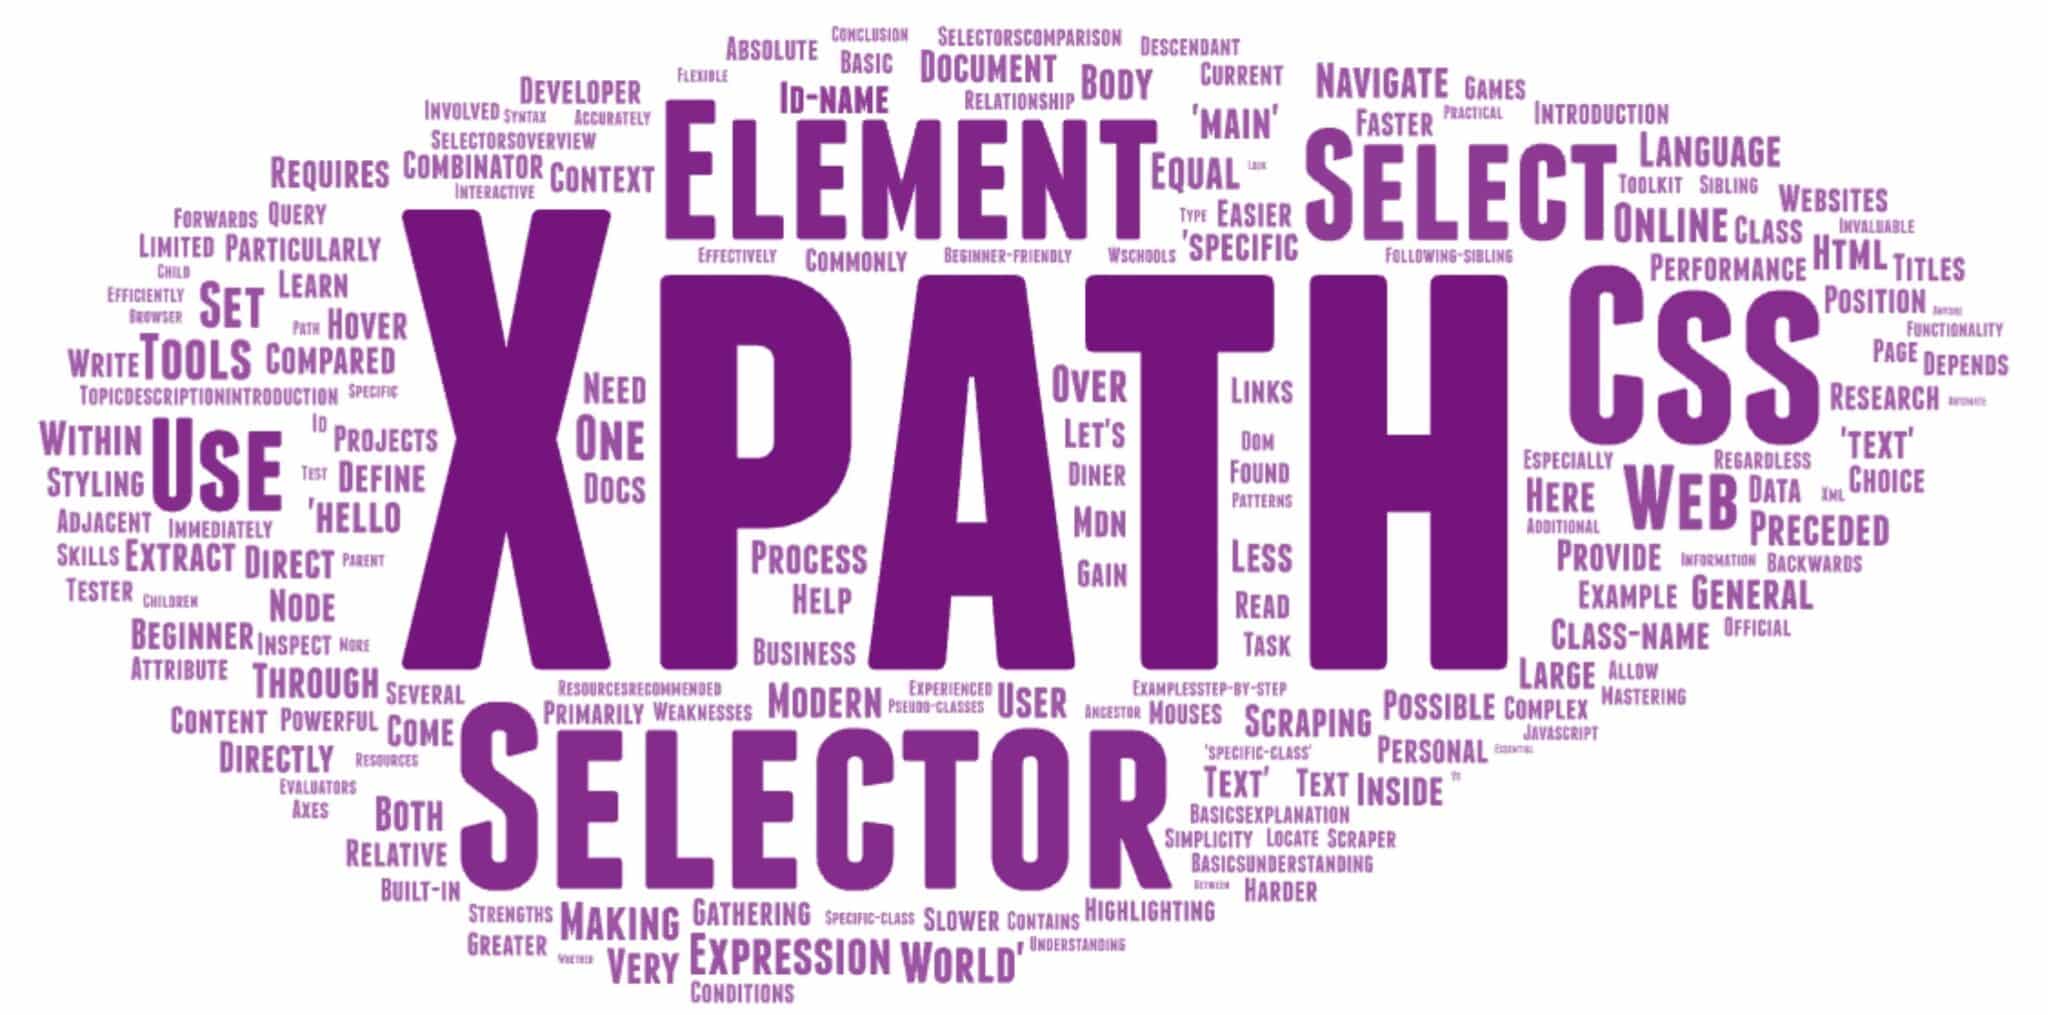 掌握 XPath 和 CSS 选择器：它们是什么以及如何使用它们进行网页抓取？